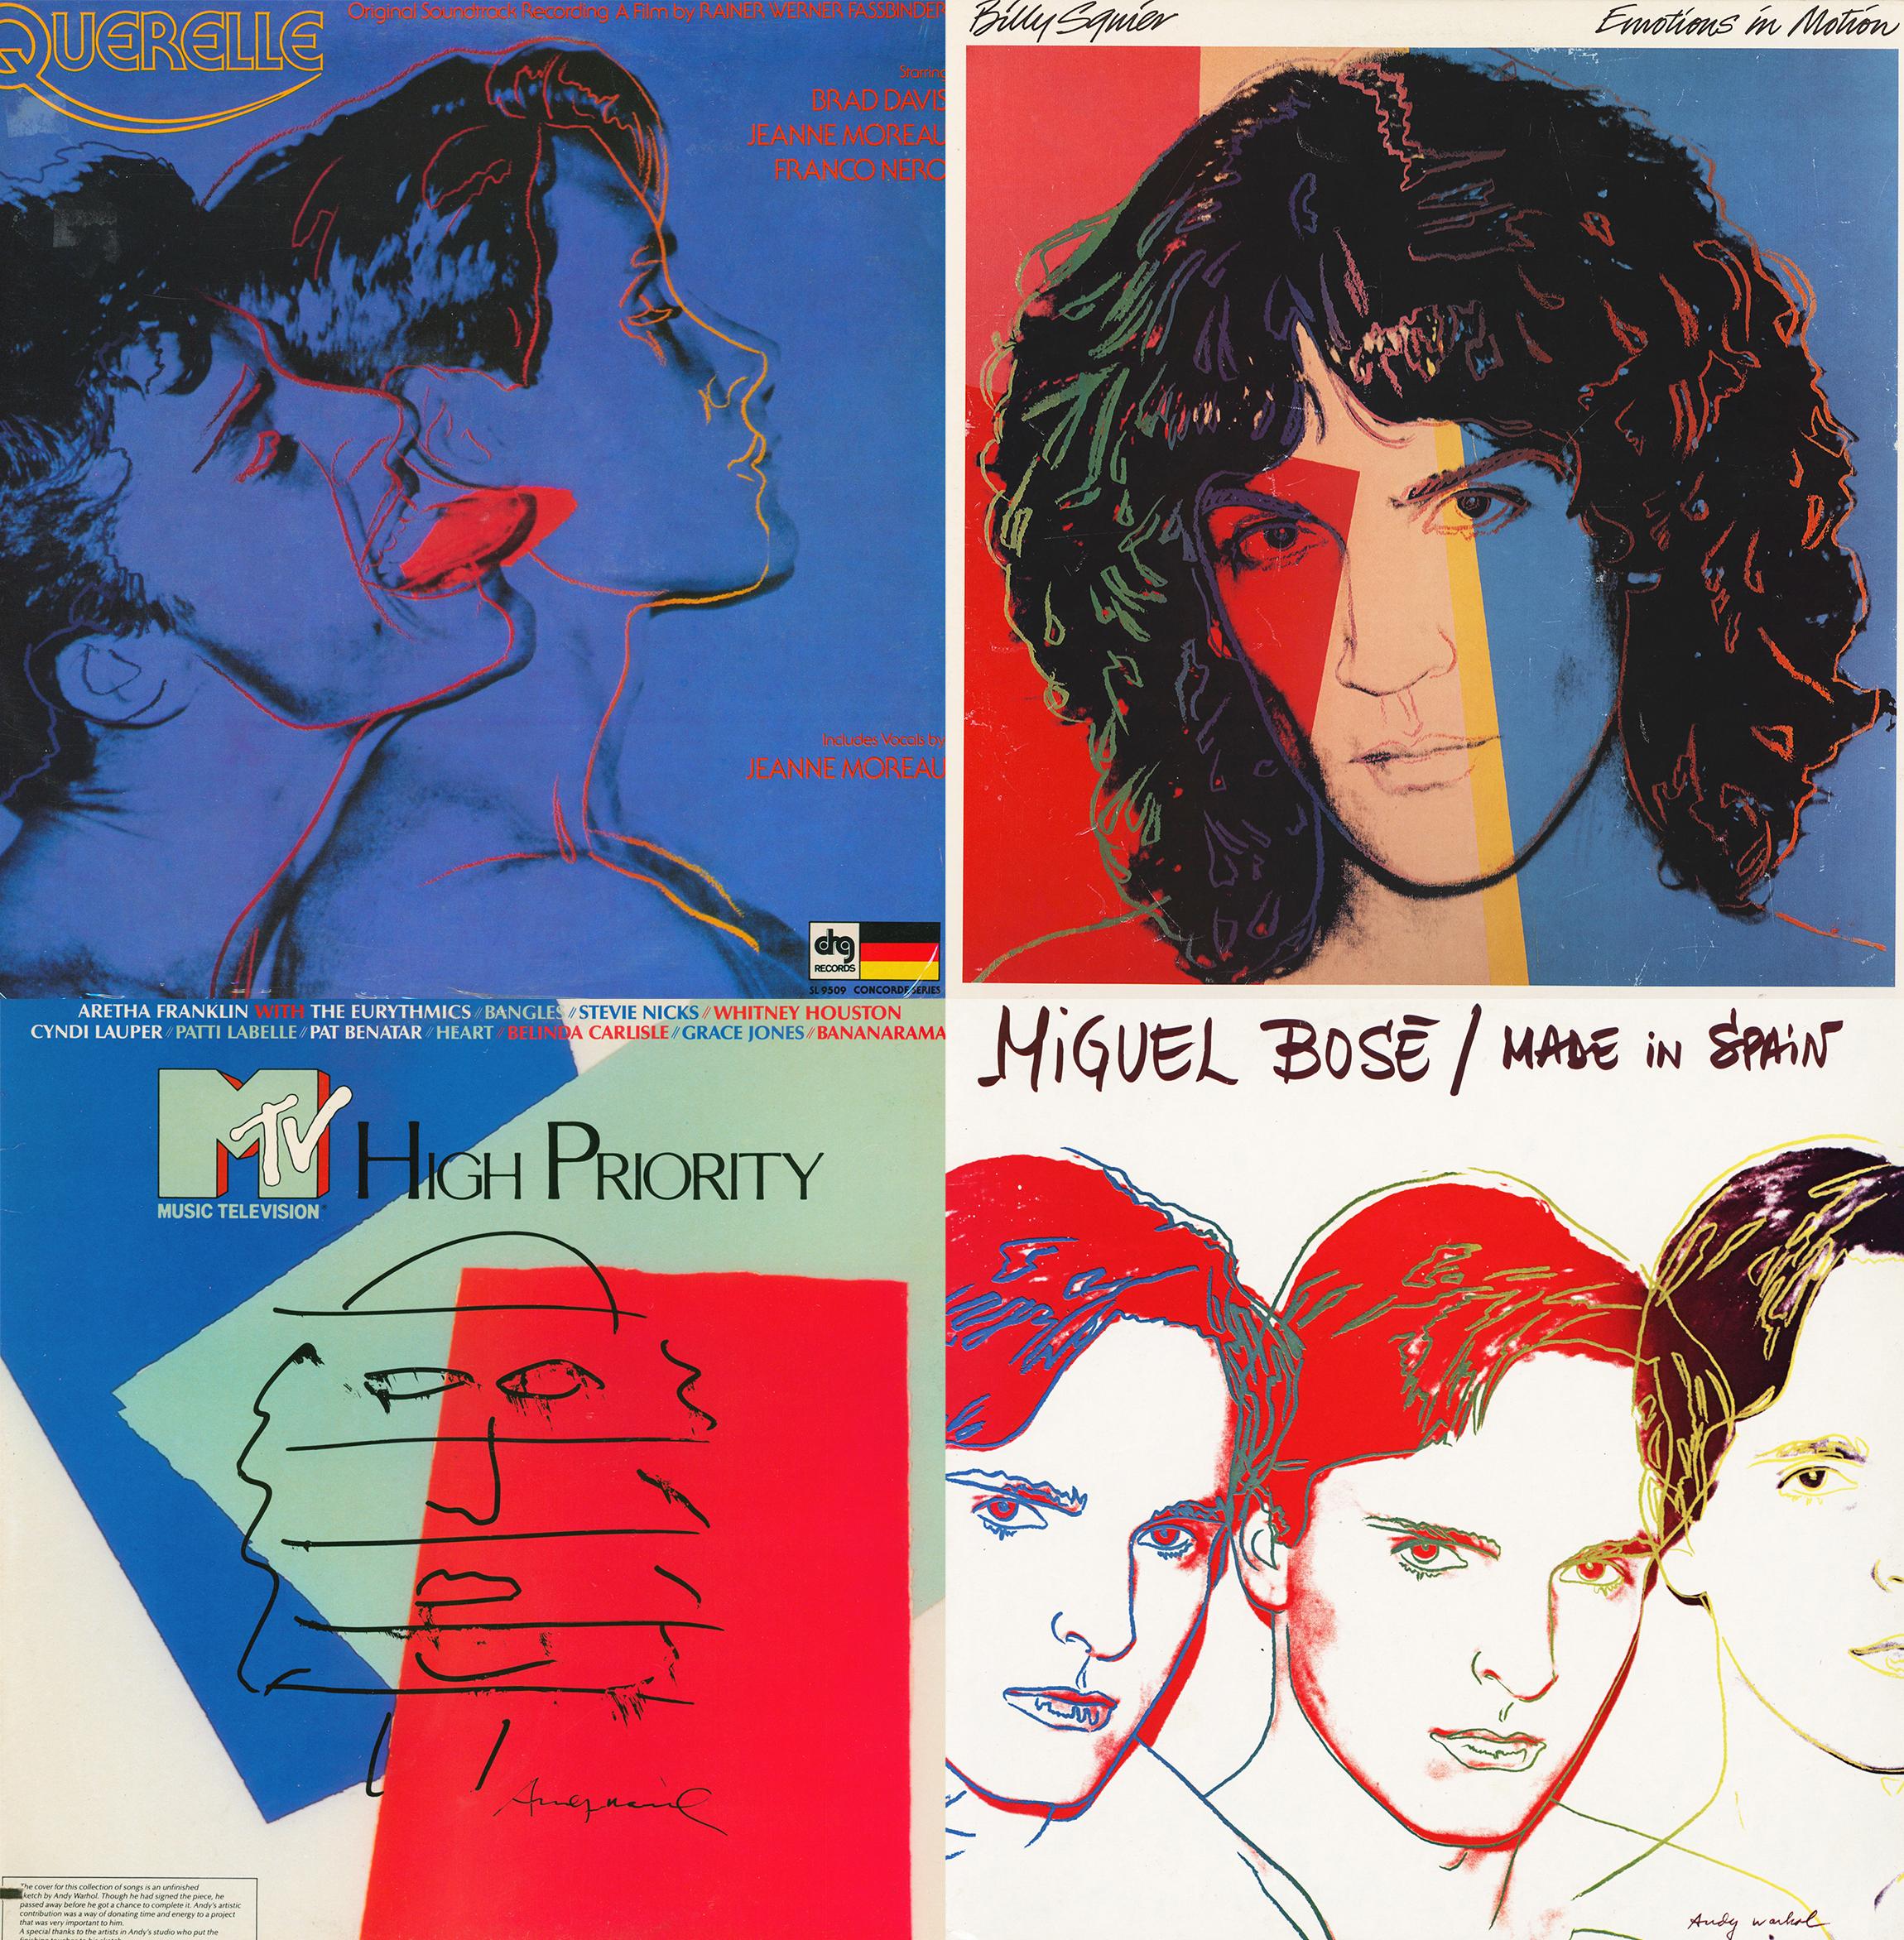 Eine Sammlung von 4 LPs mit individuellem Coverdesign von Andy Warhol. Mit den folgenden Künstlern und Alben:
- Querelle (Original Motion Picture Soundtrack) von Peer Raben & David Ambach
- Emotionen in Bewegung von Billy Squier
- MTV High Priority